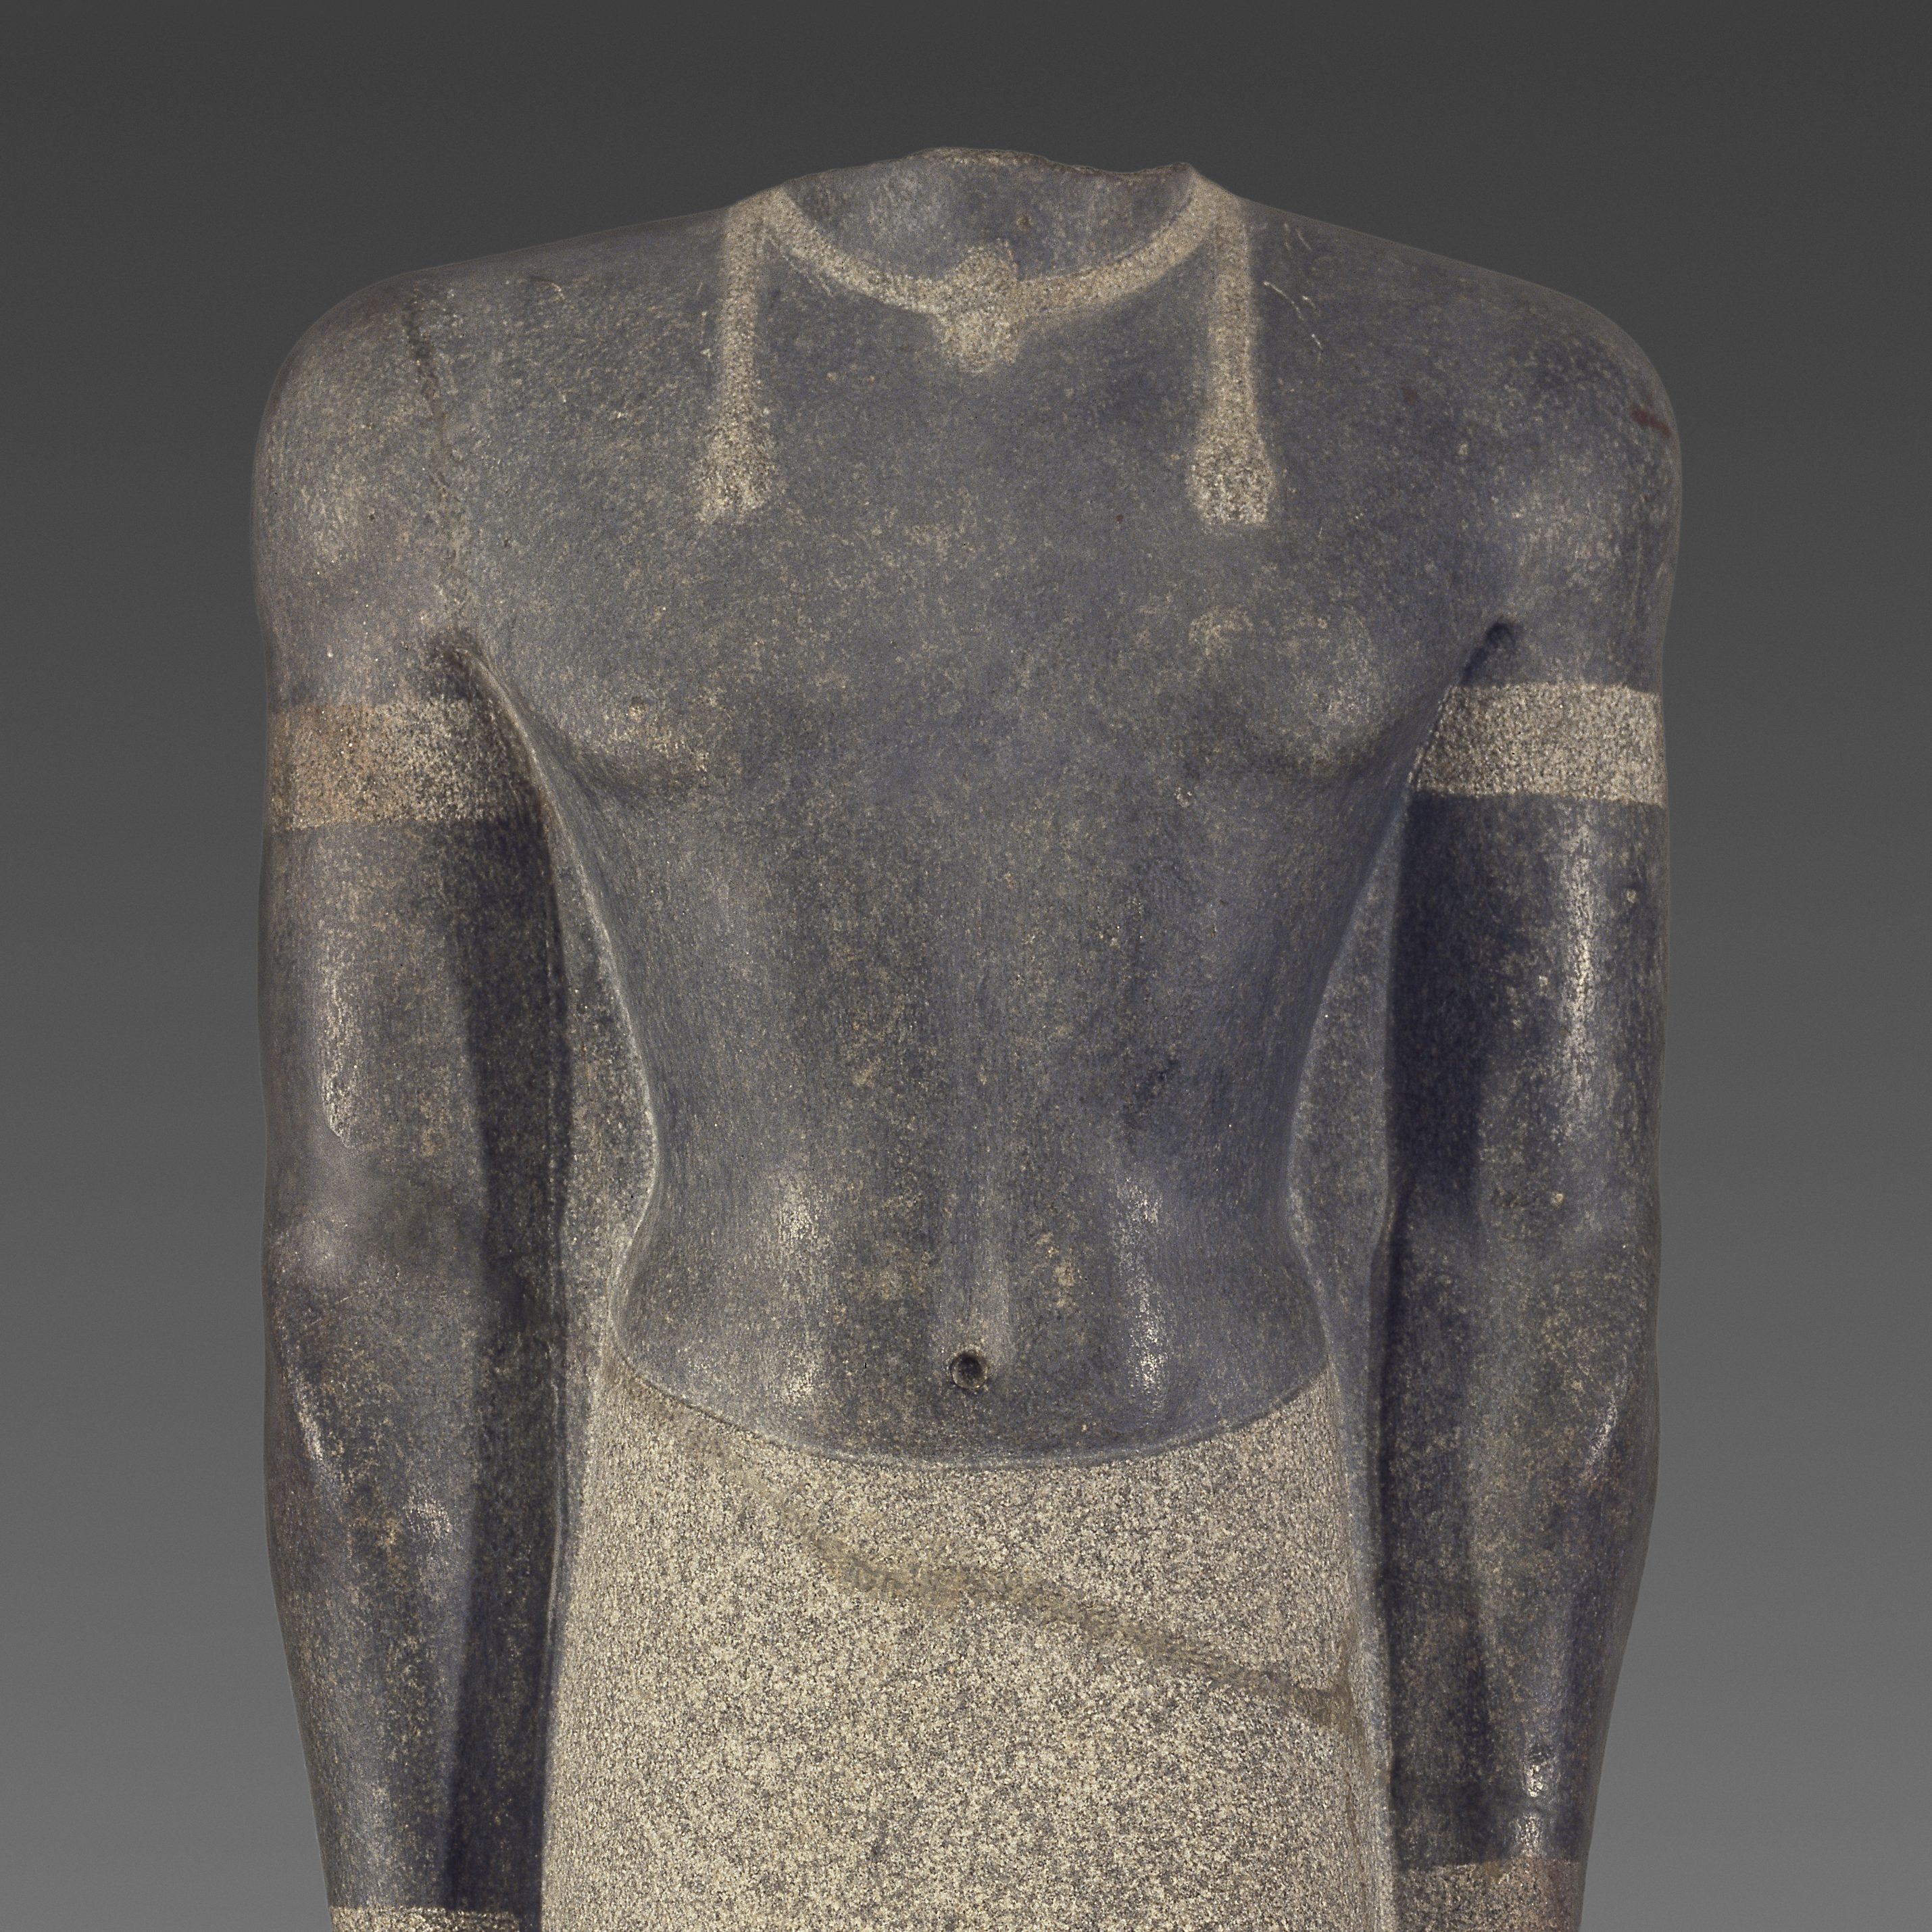 <p>Comienza con la Galería del Antiguo Egipto (Ancient Egyptian Gallery) en el Nivel 2. ¡Diviértete!</p>
<p>Un hombre con falda nunca se ha visto tan elegante. Encuentra esta escultura y dinos, ¿cómo se llama lo que lleva puesto?</p>
